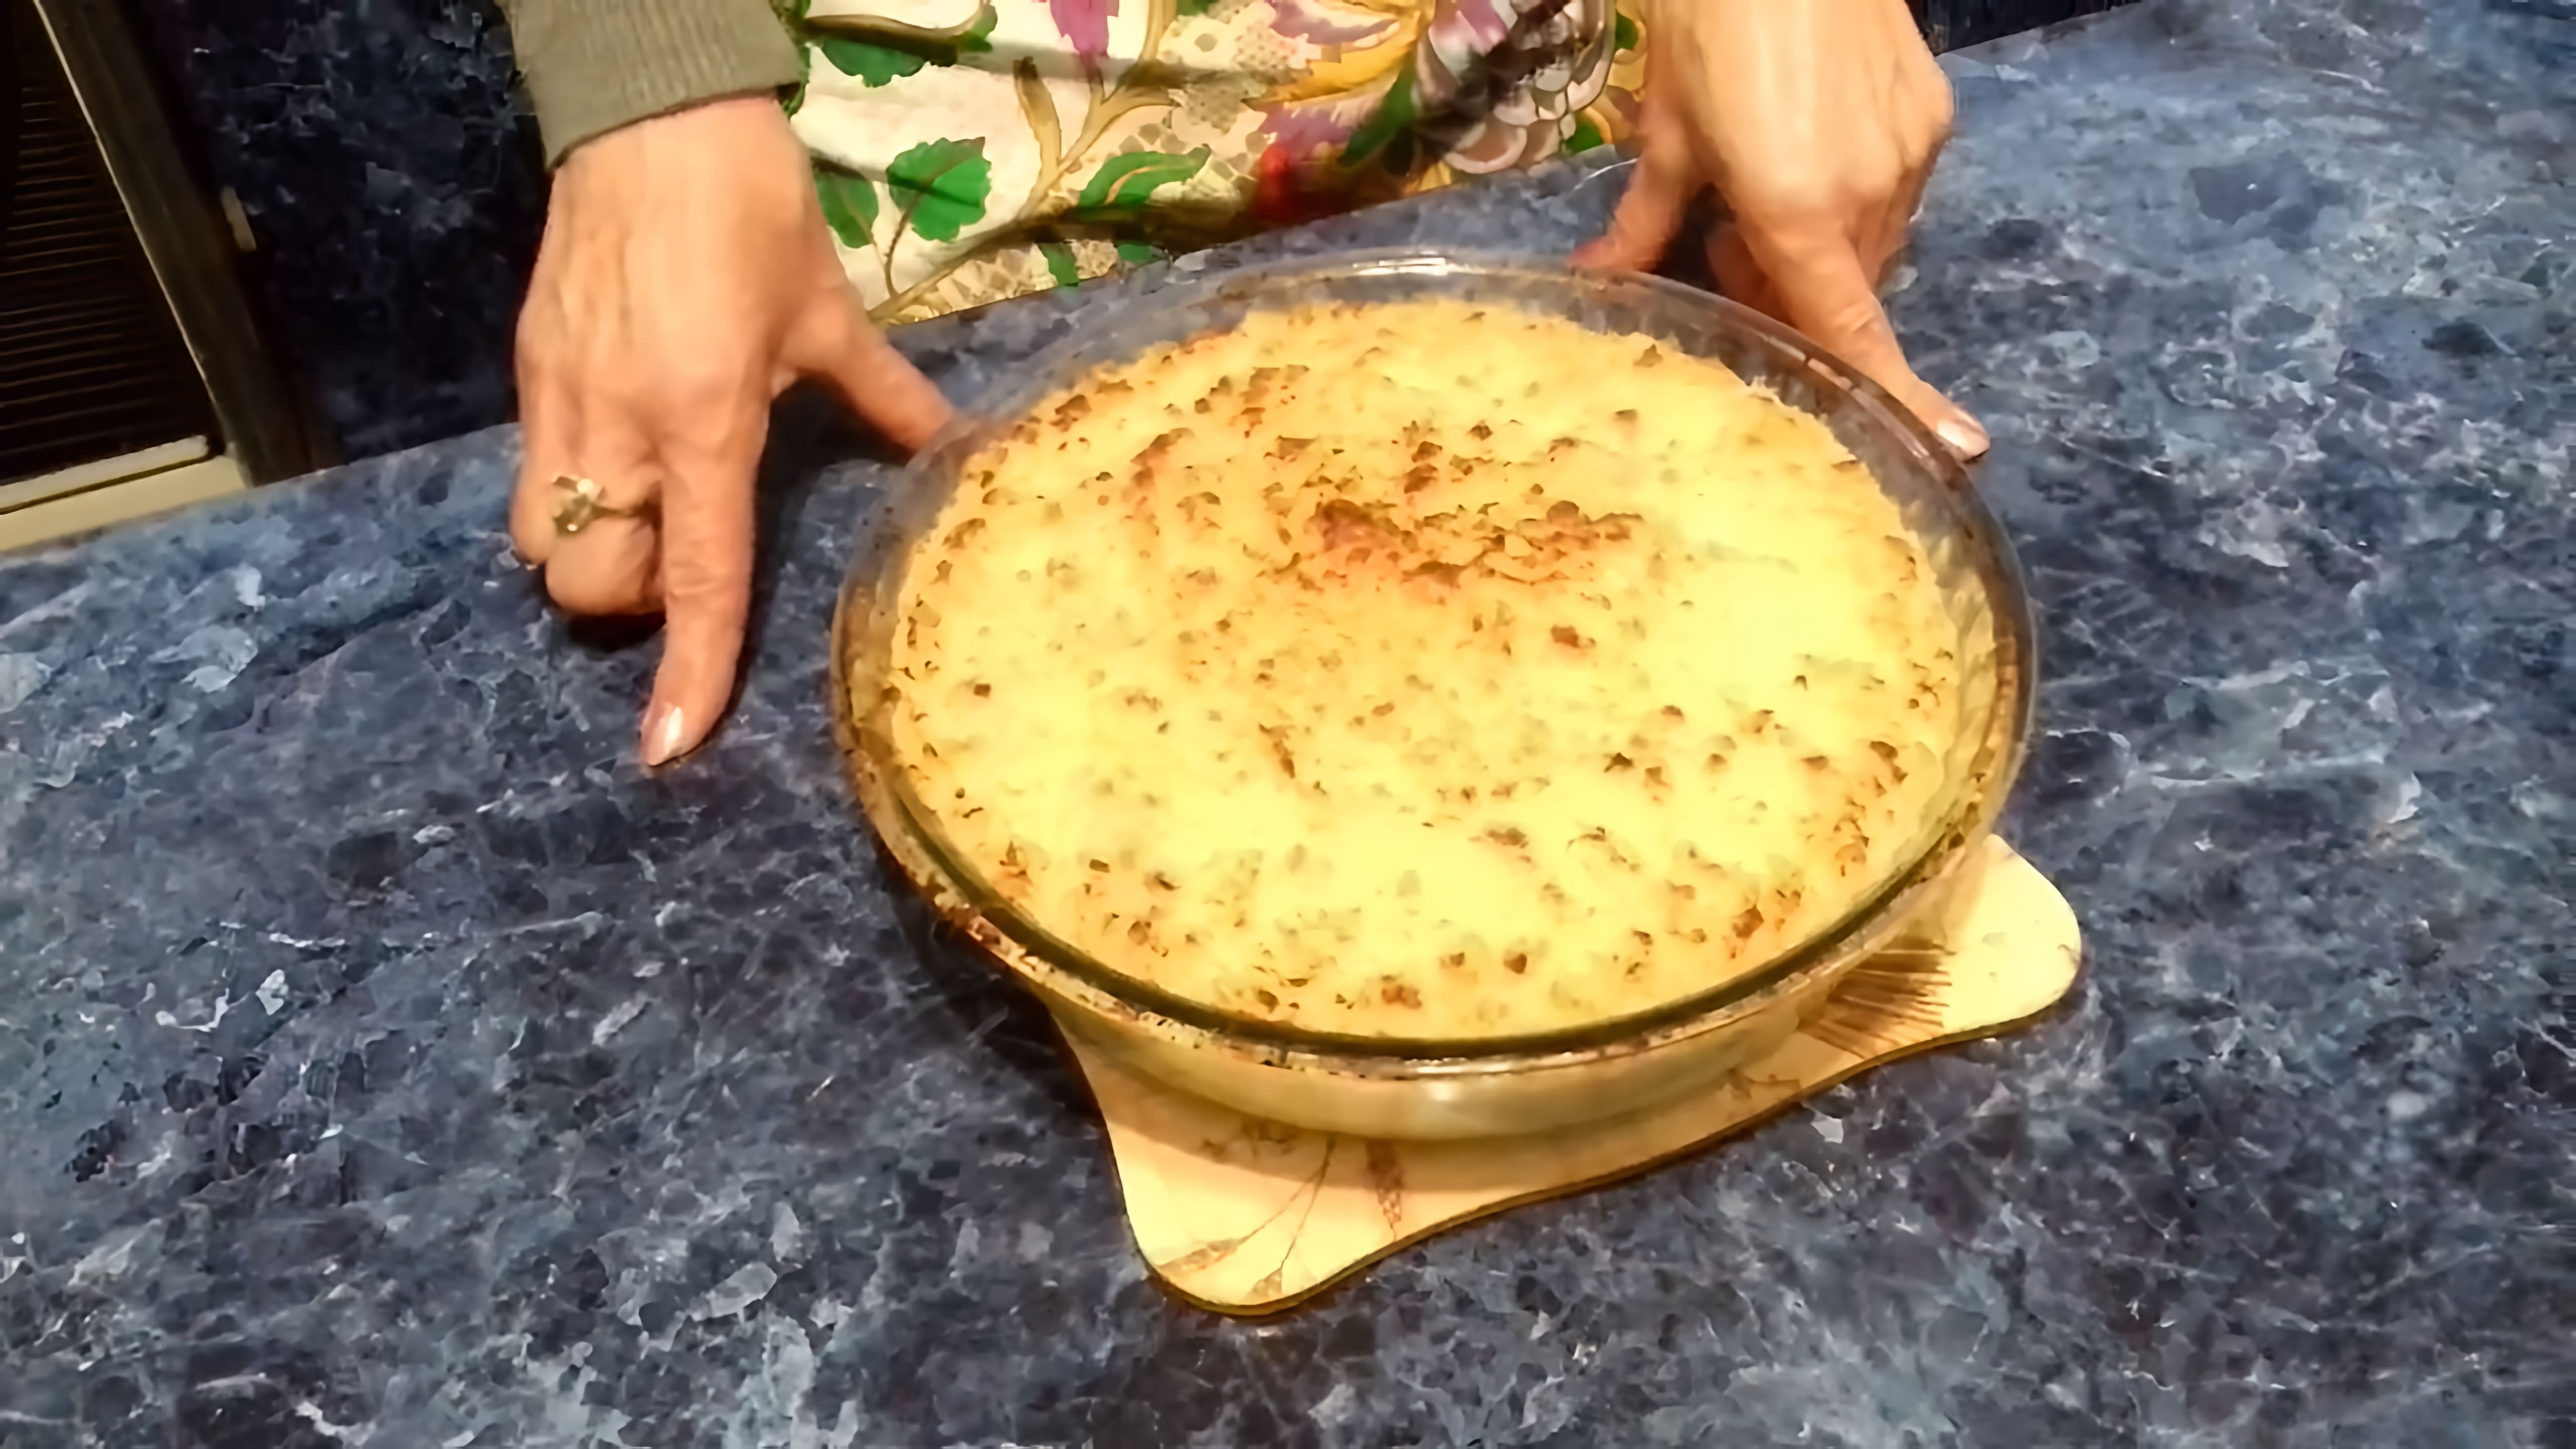 В этом видео демонстрируется рецепт приготовления белорусской "Бабки" - вкусного блюда из картофеля